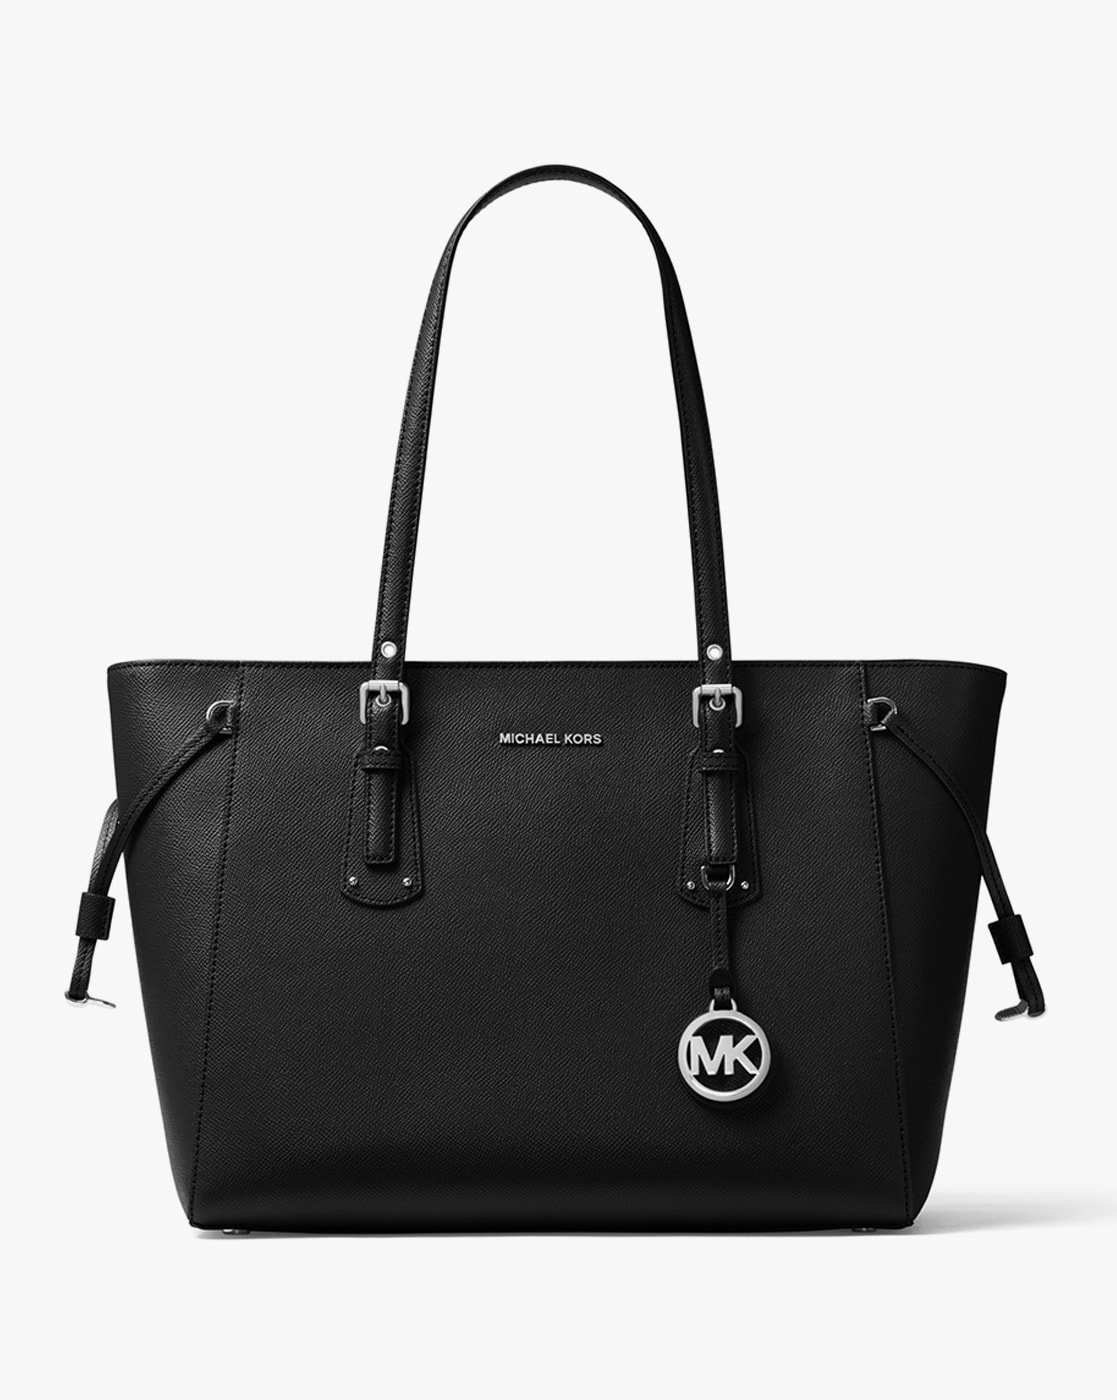 MICHAEL KORS Voyager Medium Crossgrain Leather Tote Bag, Women's  Handbag Black 196163131894